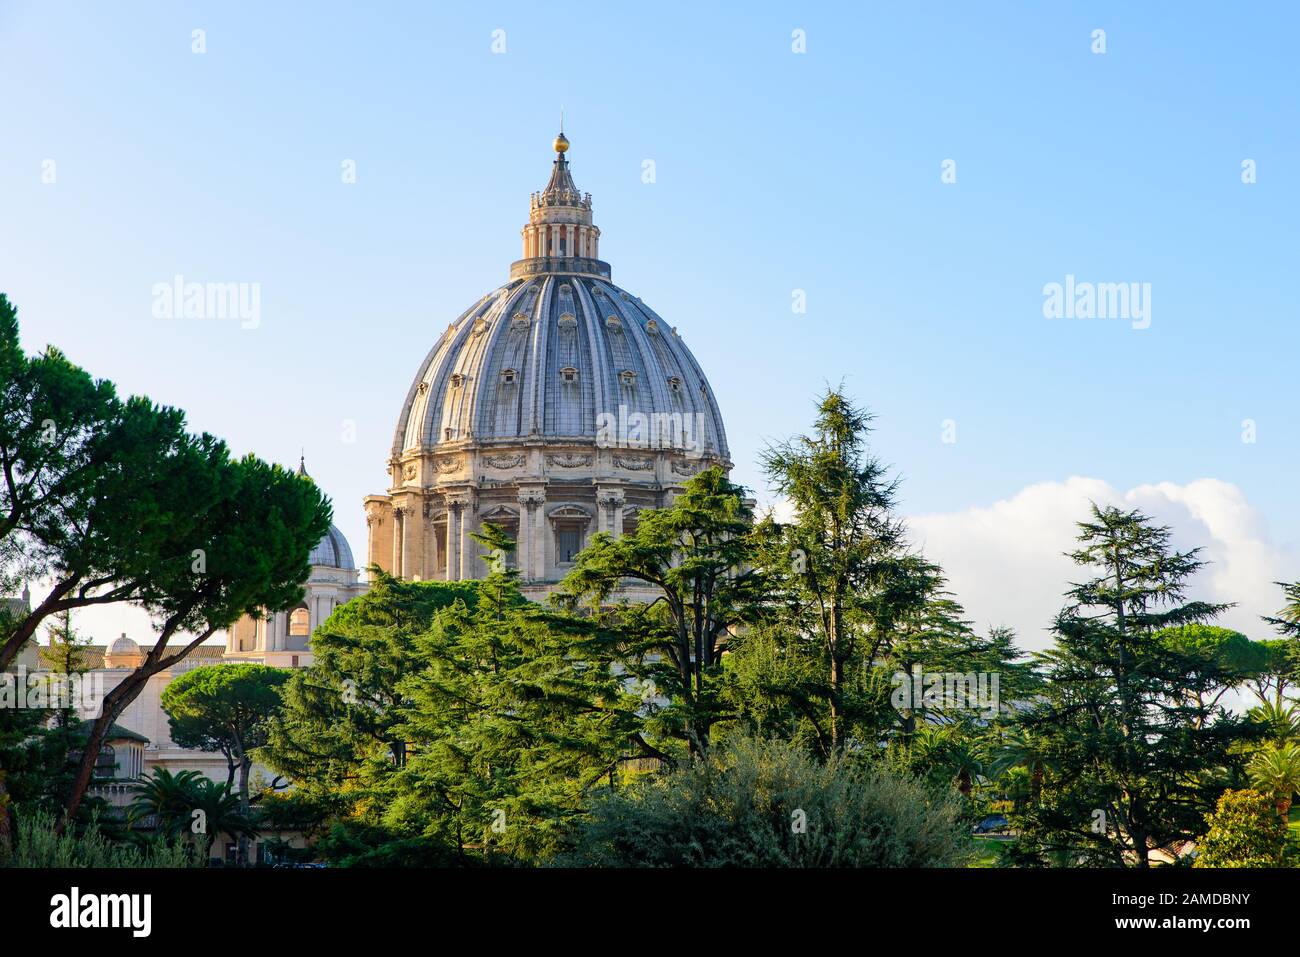 Die Kuppel des Petersdoms in der Vatikanstadt, der größten Kirche der Welt Stockfoto